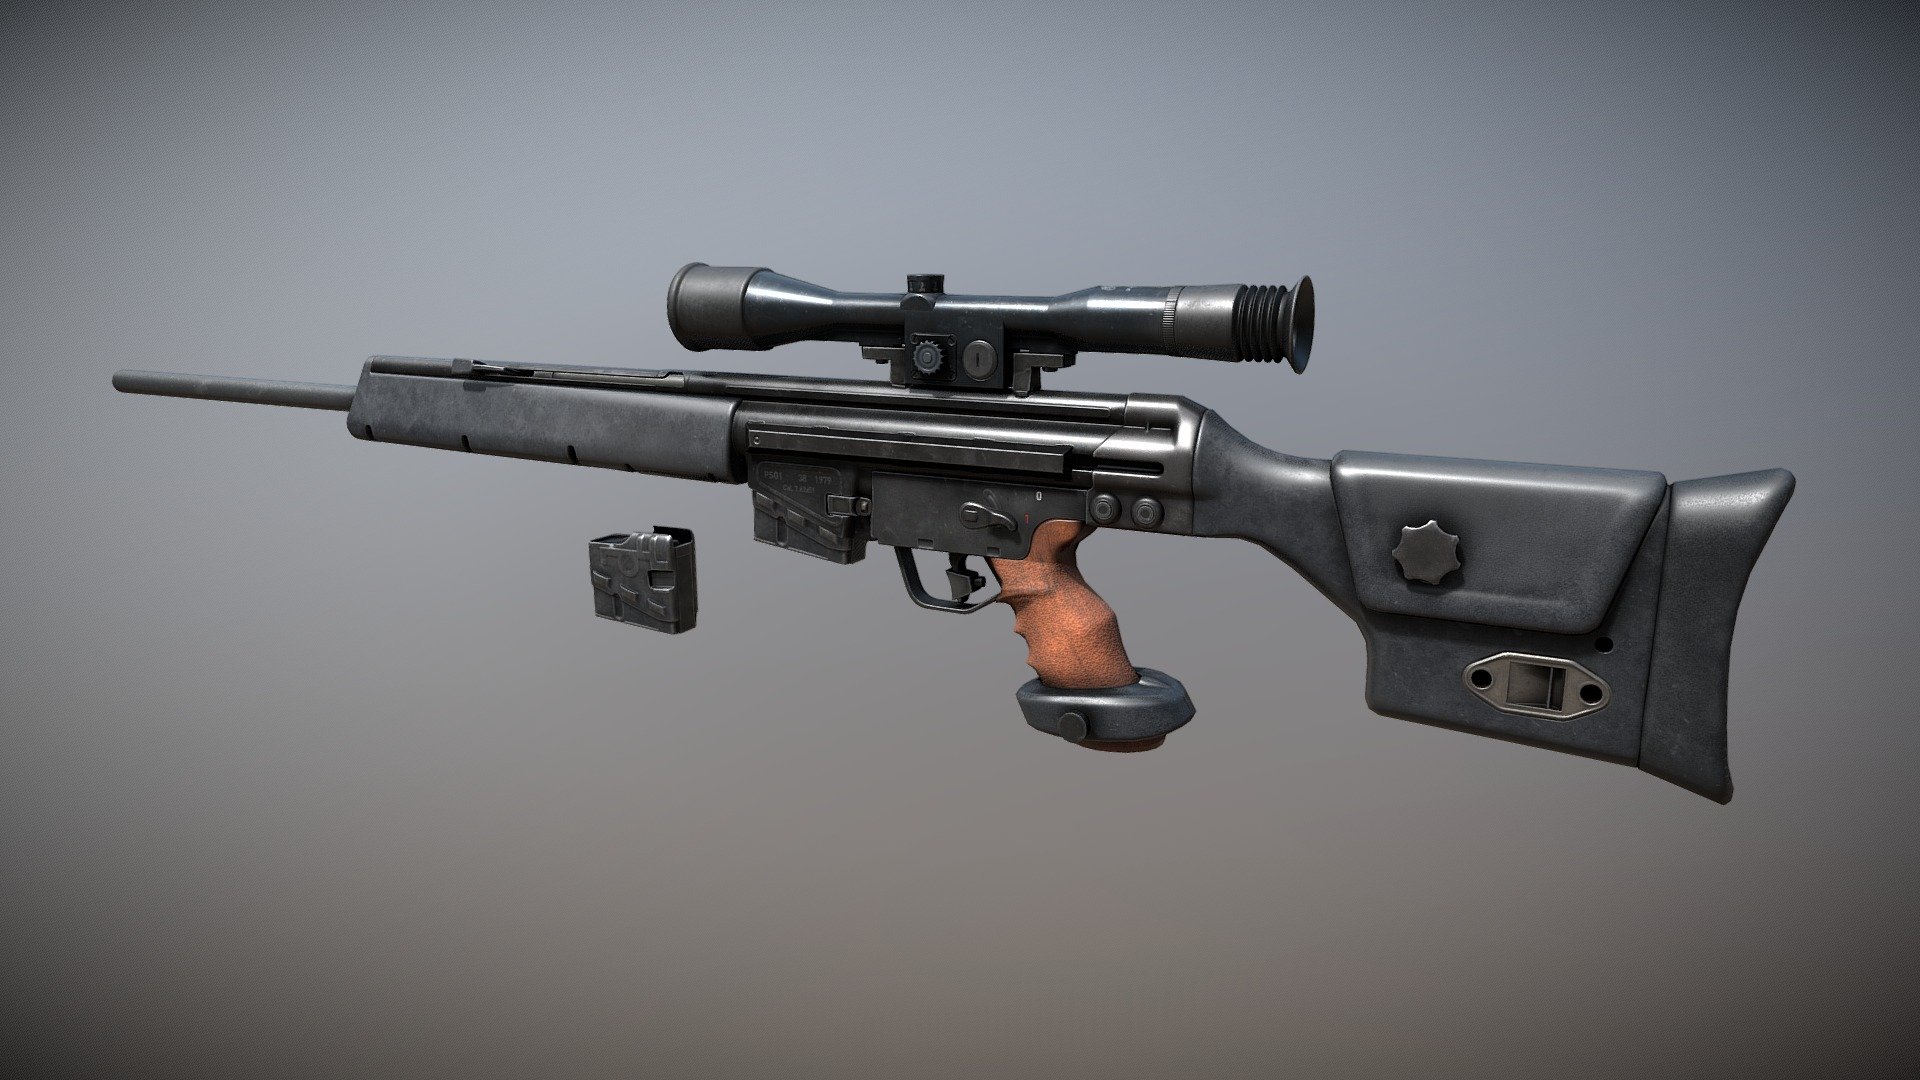 HK PSG-1 Sniper Rifle